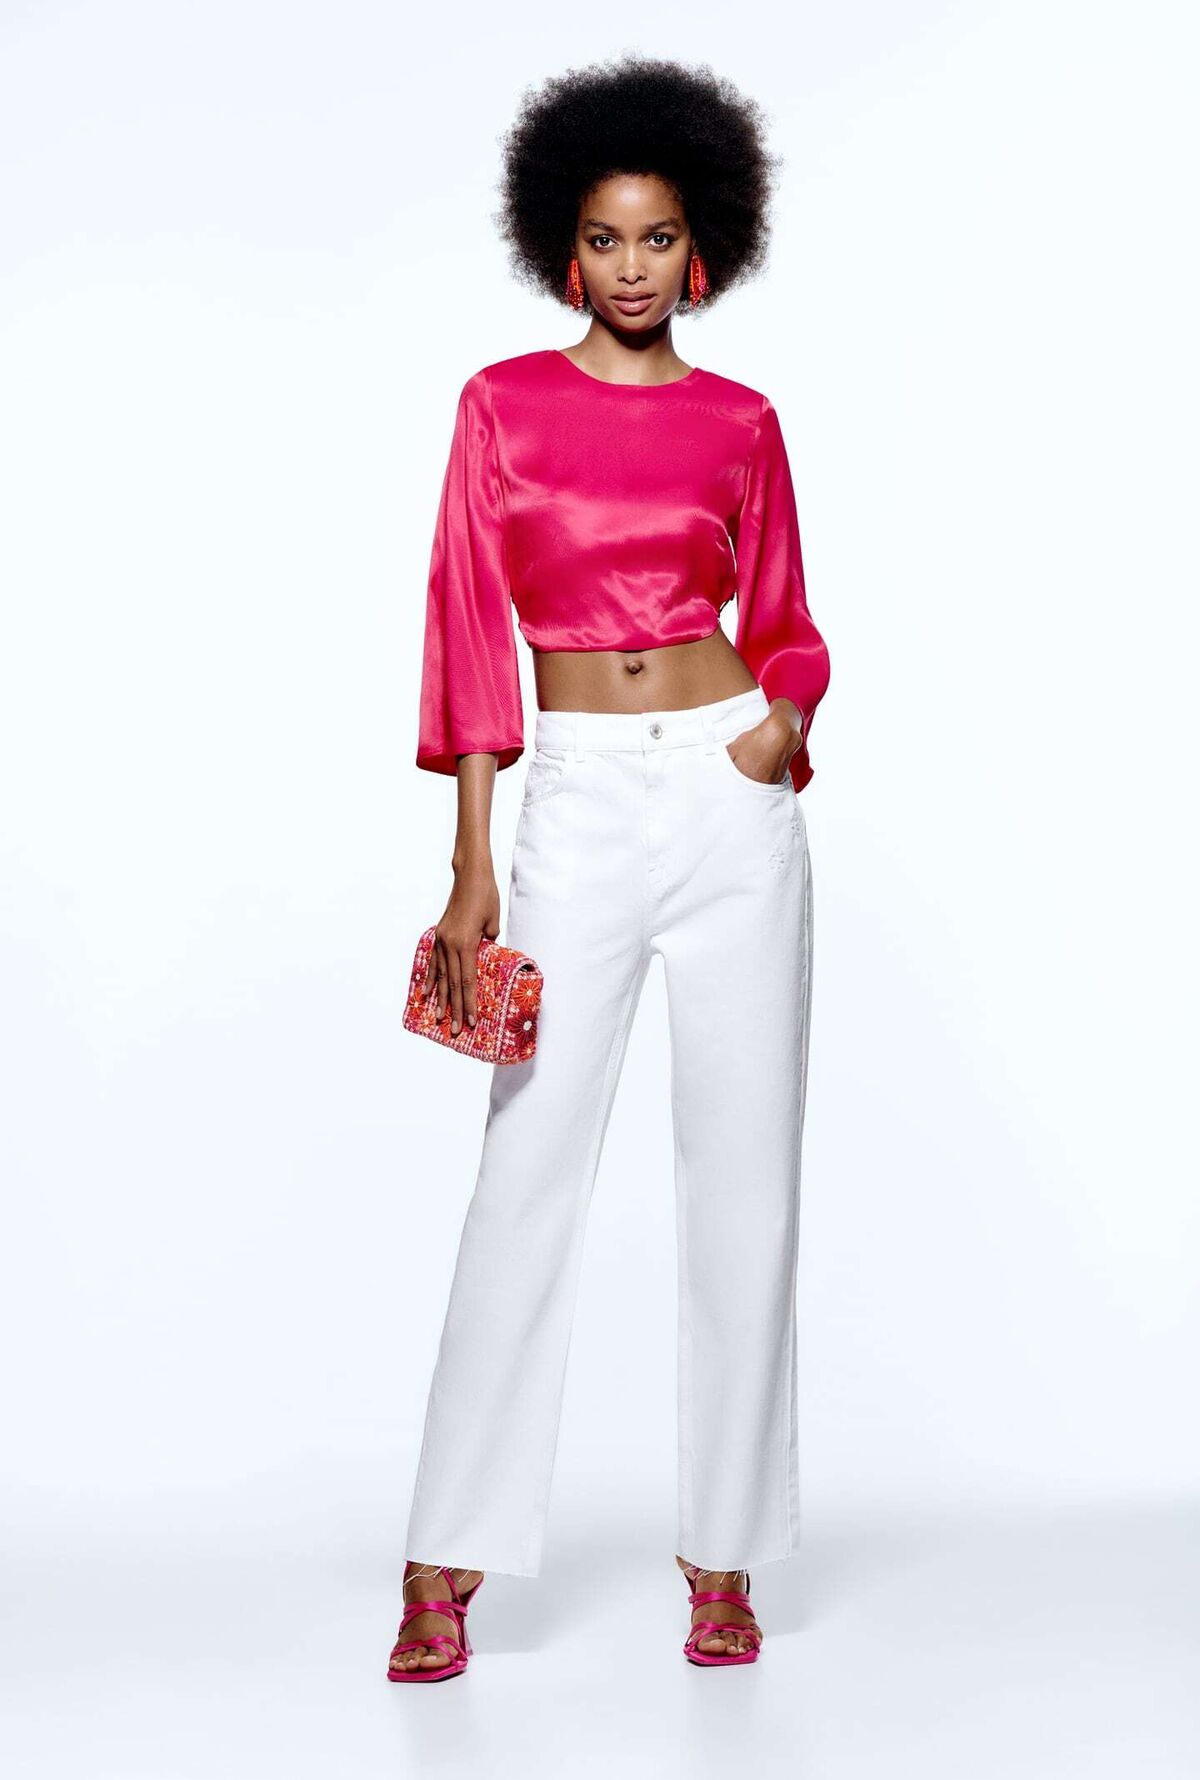 Zara tiene la verano 2022: pantalones y blusa rosa